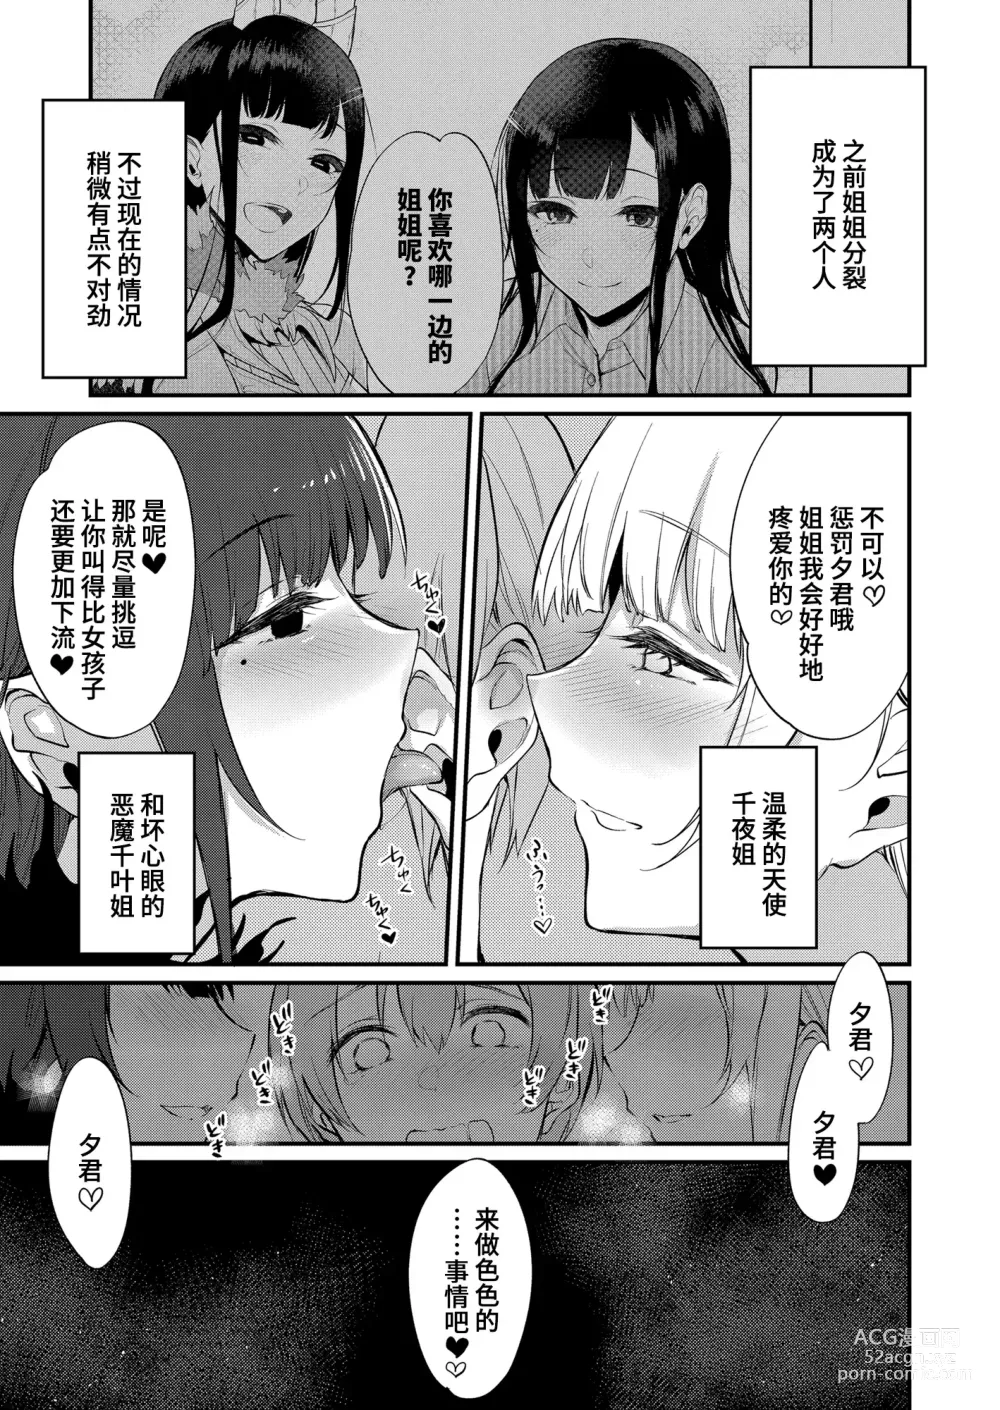 Page 431 of doujinshi Ane Naru Mono 1-11